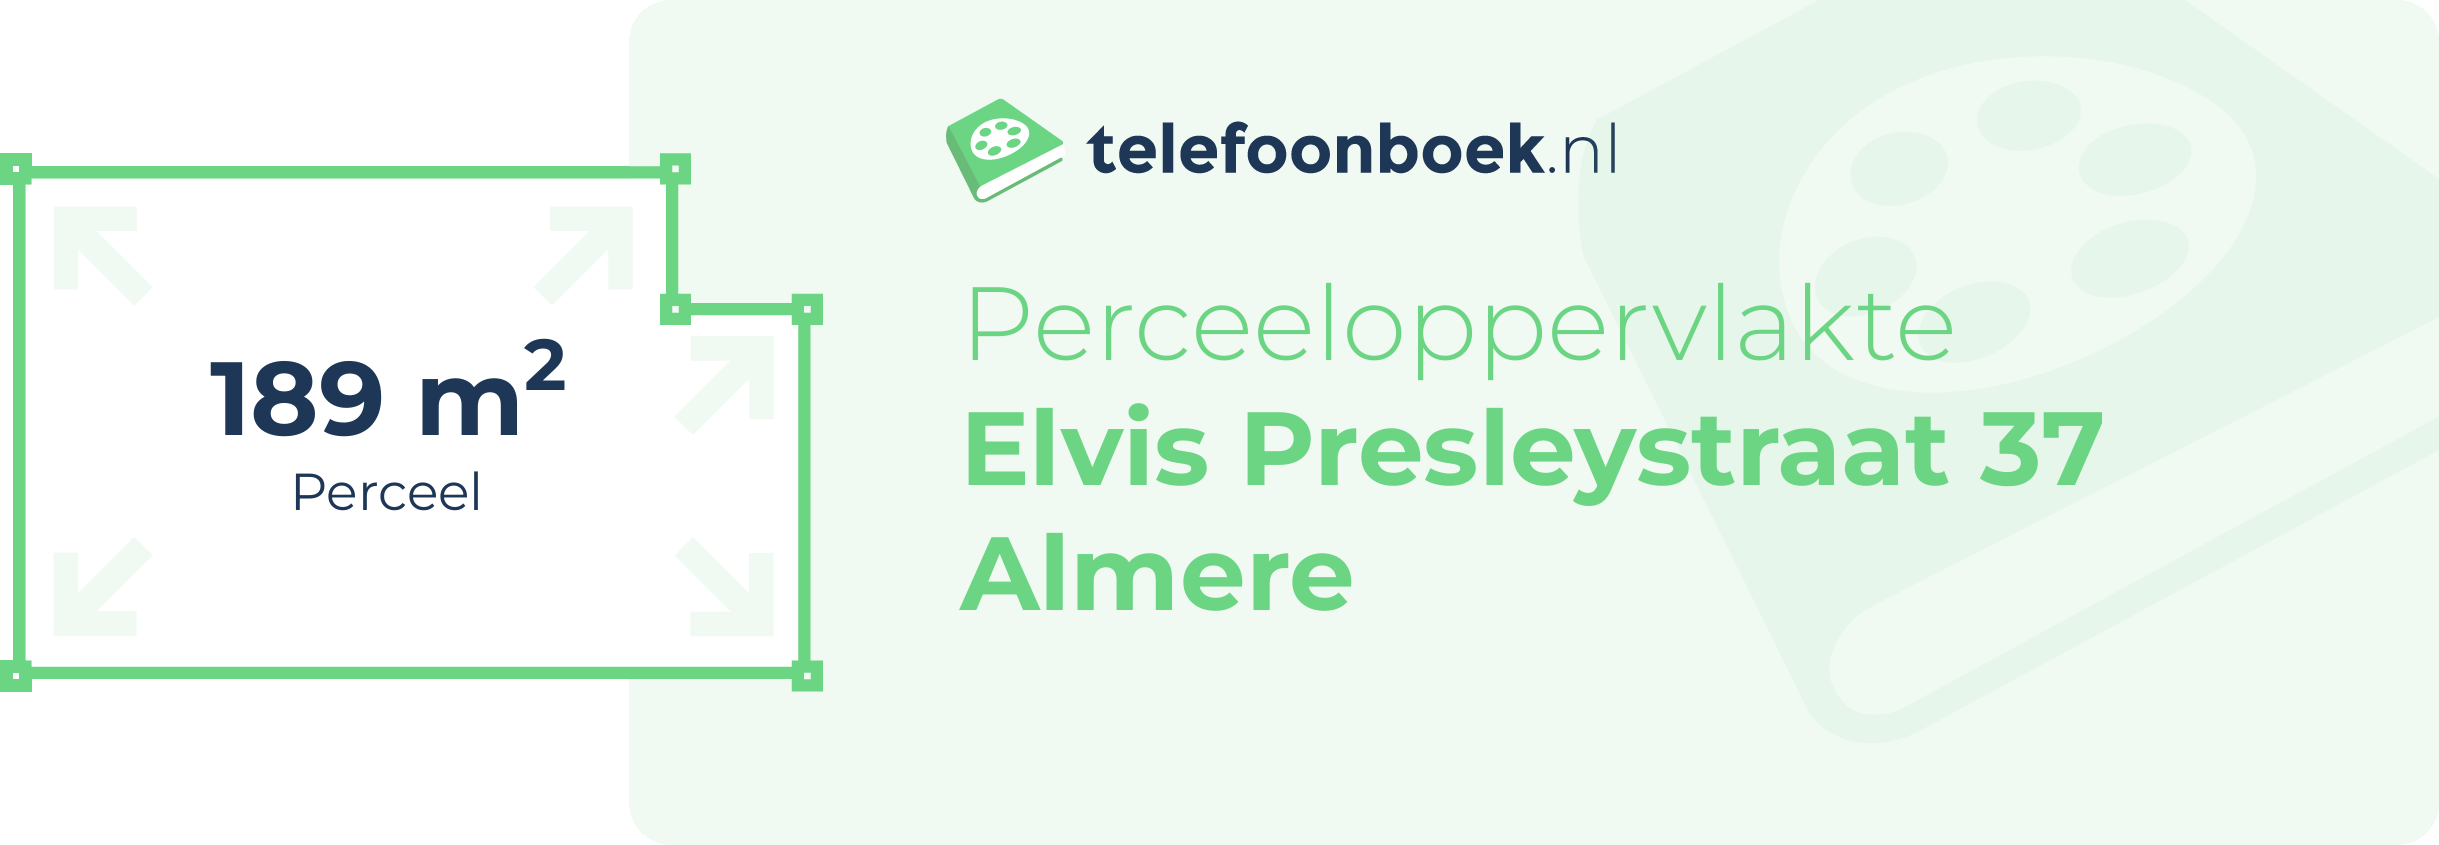 Perceeloppervlakte Elvis Presleystraat 37 Almere